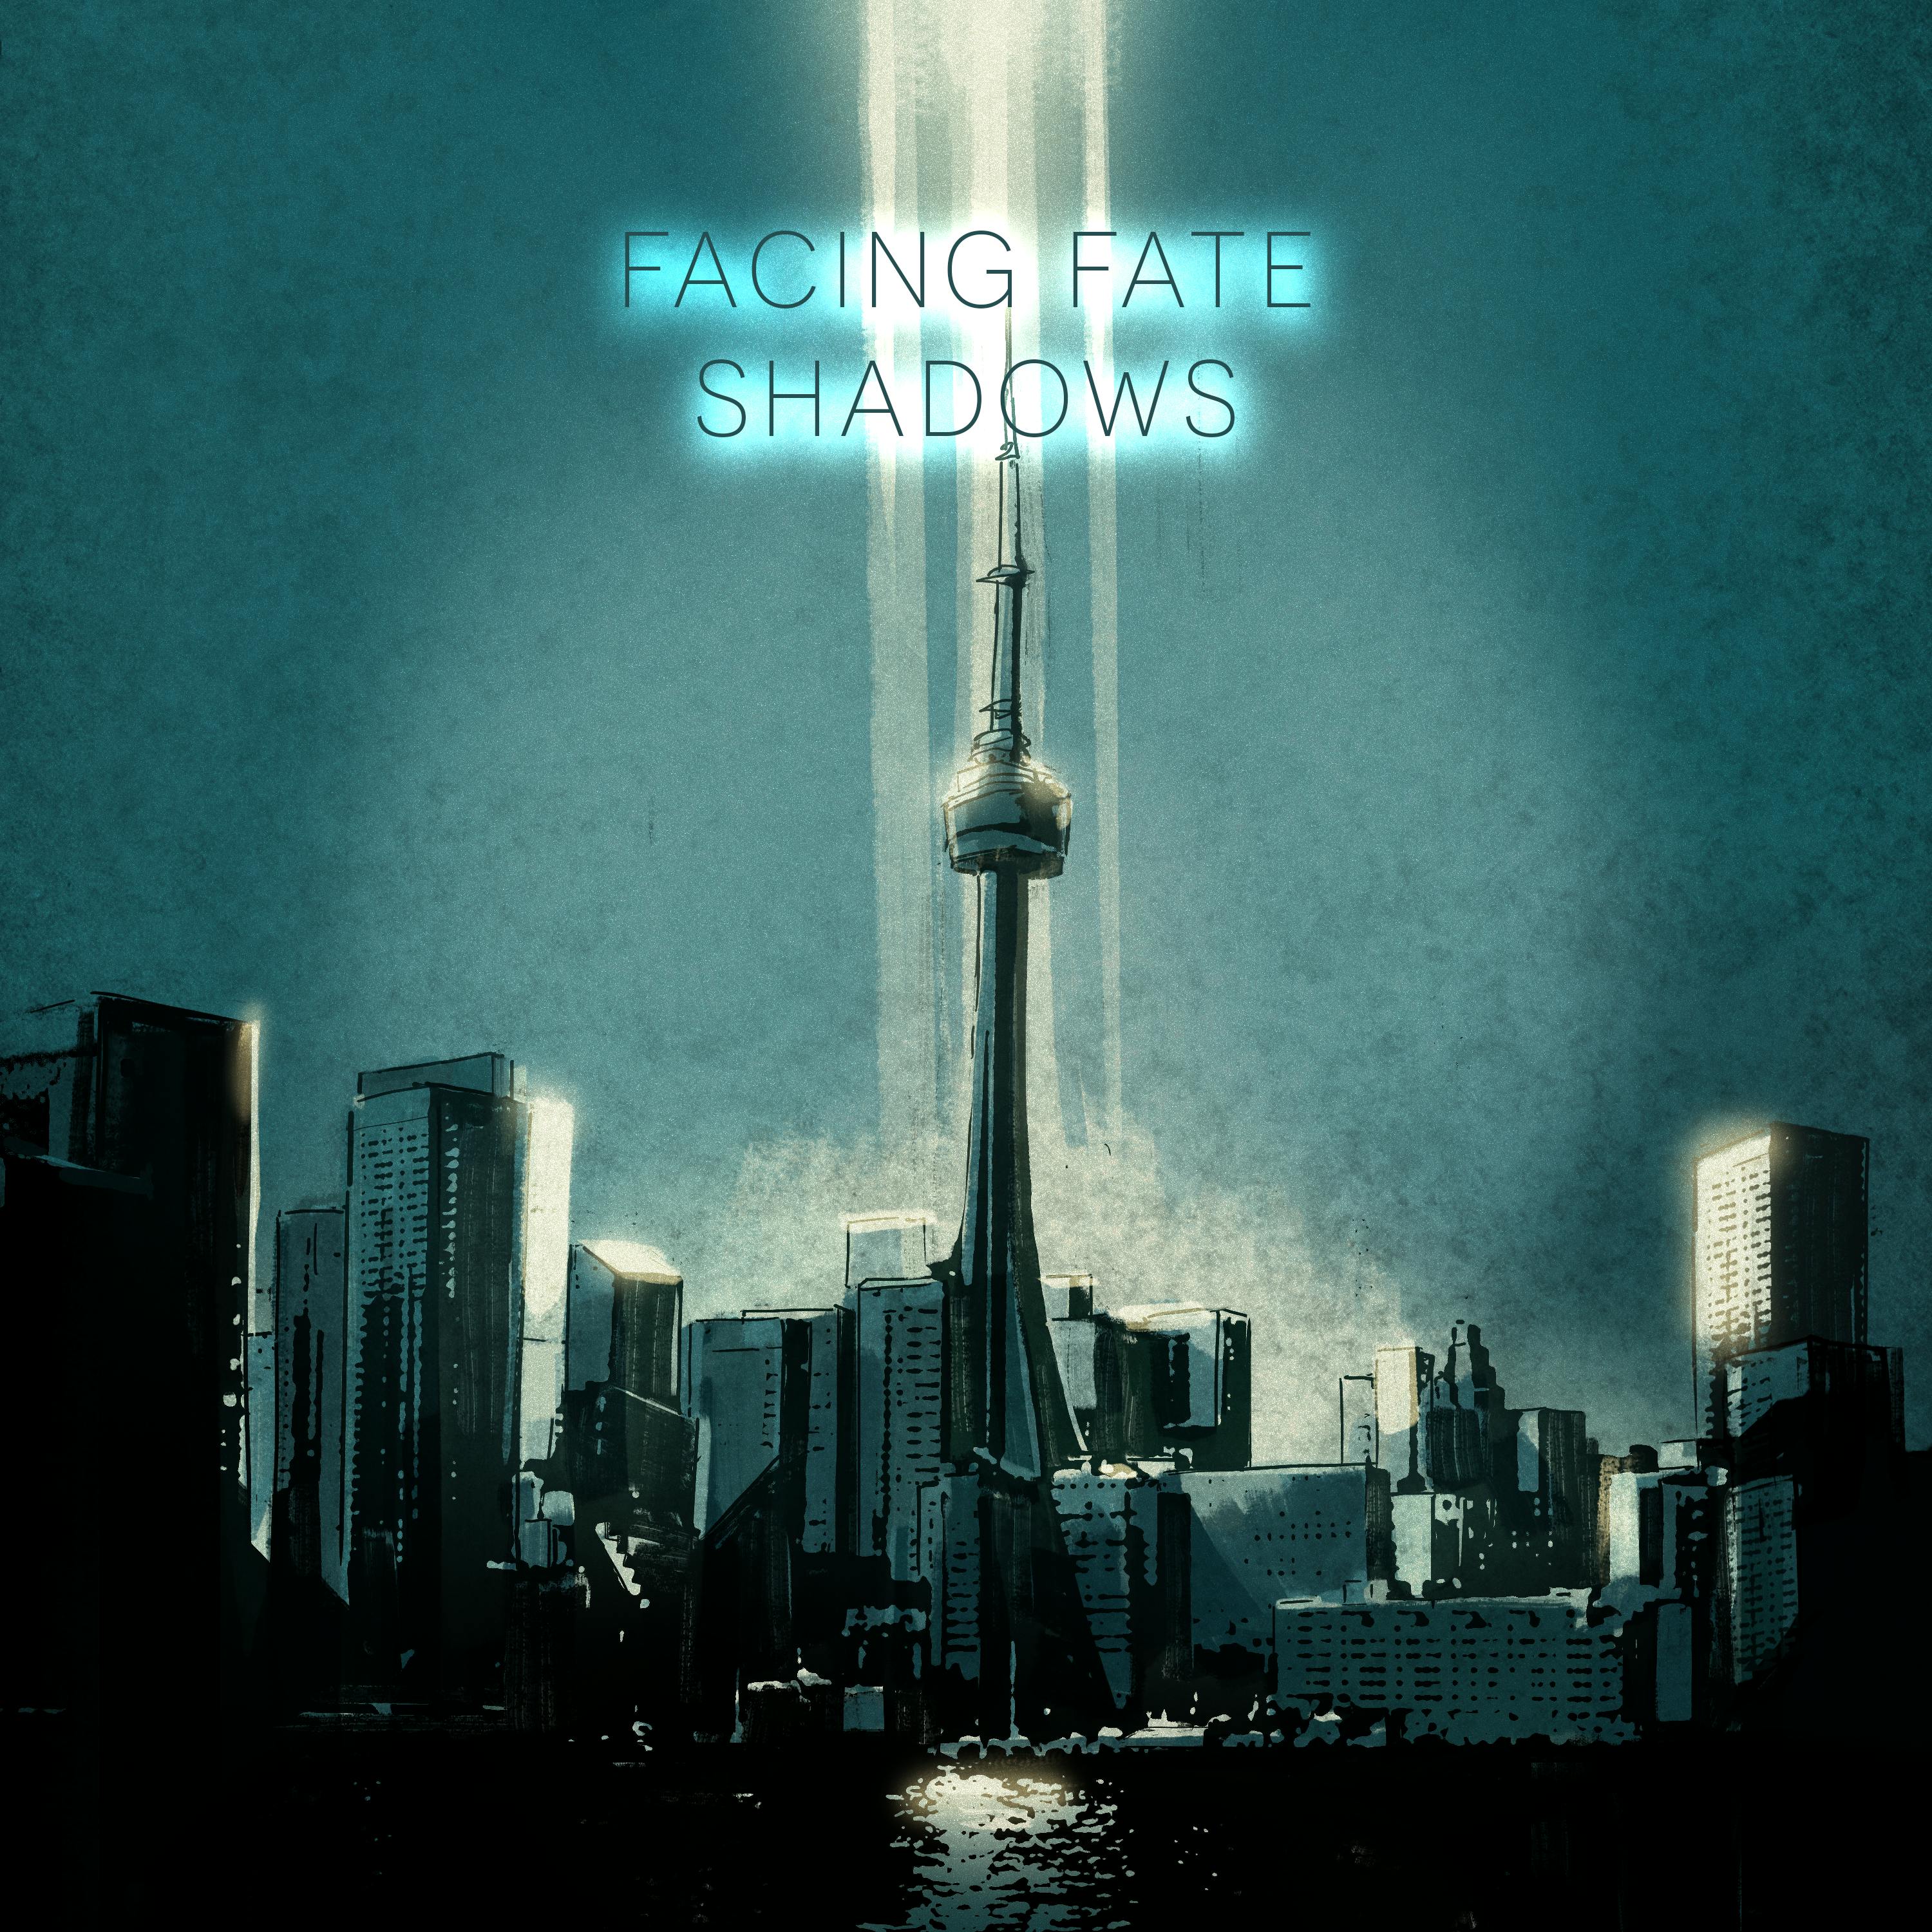 Shadows; Episode 05 - Phase & Enter